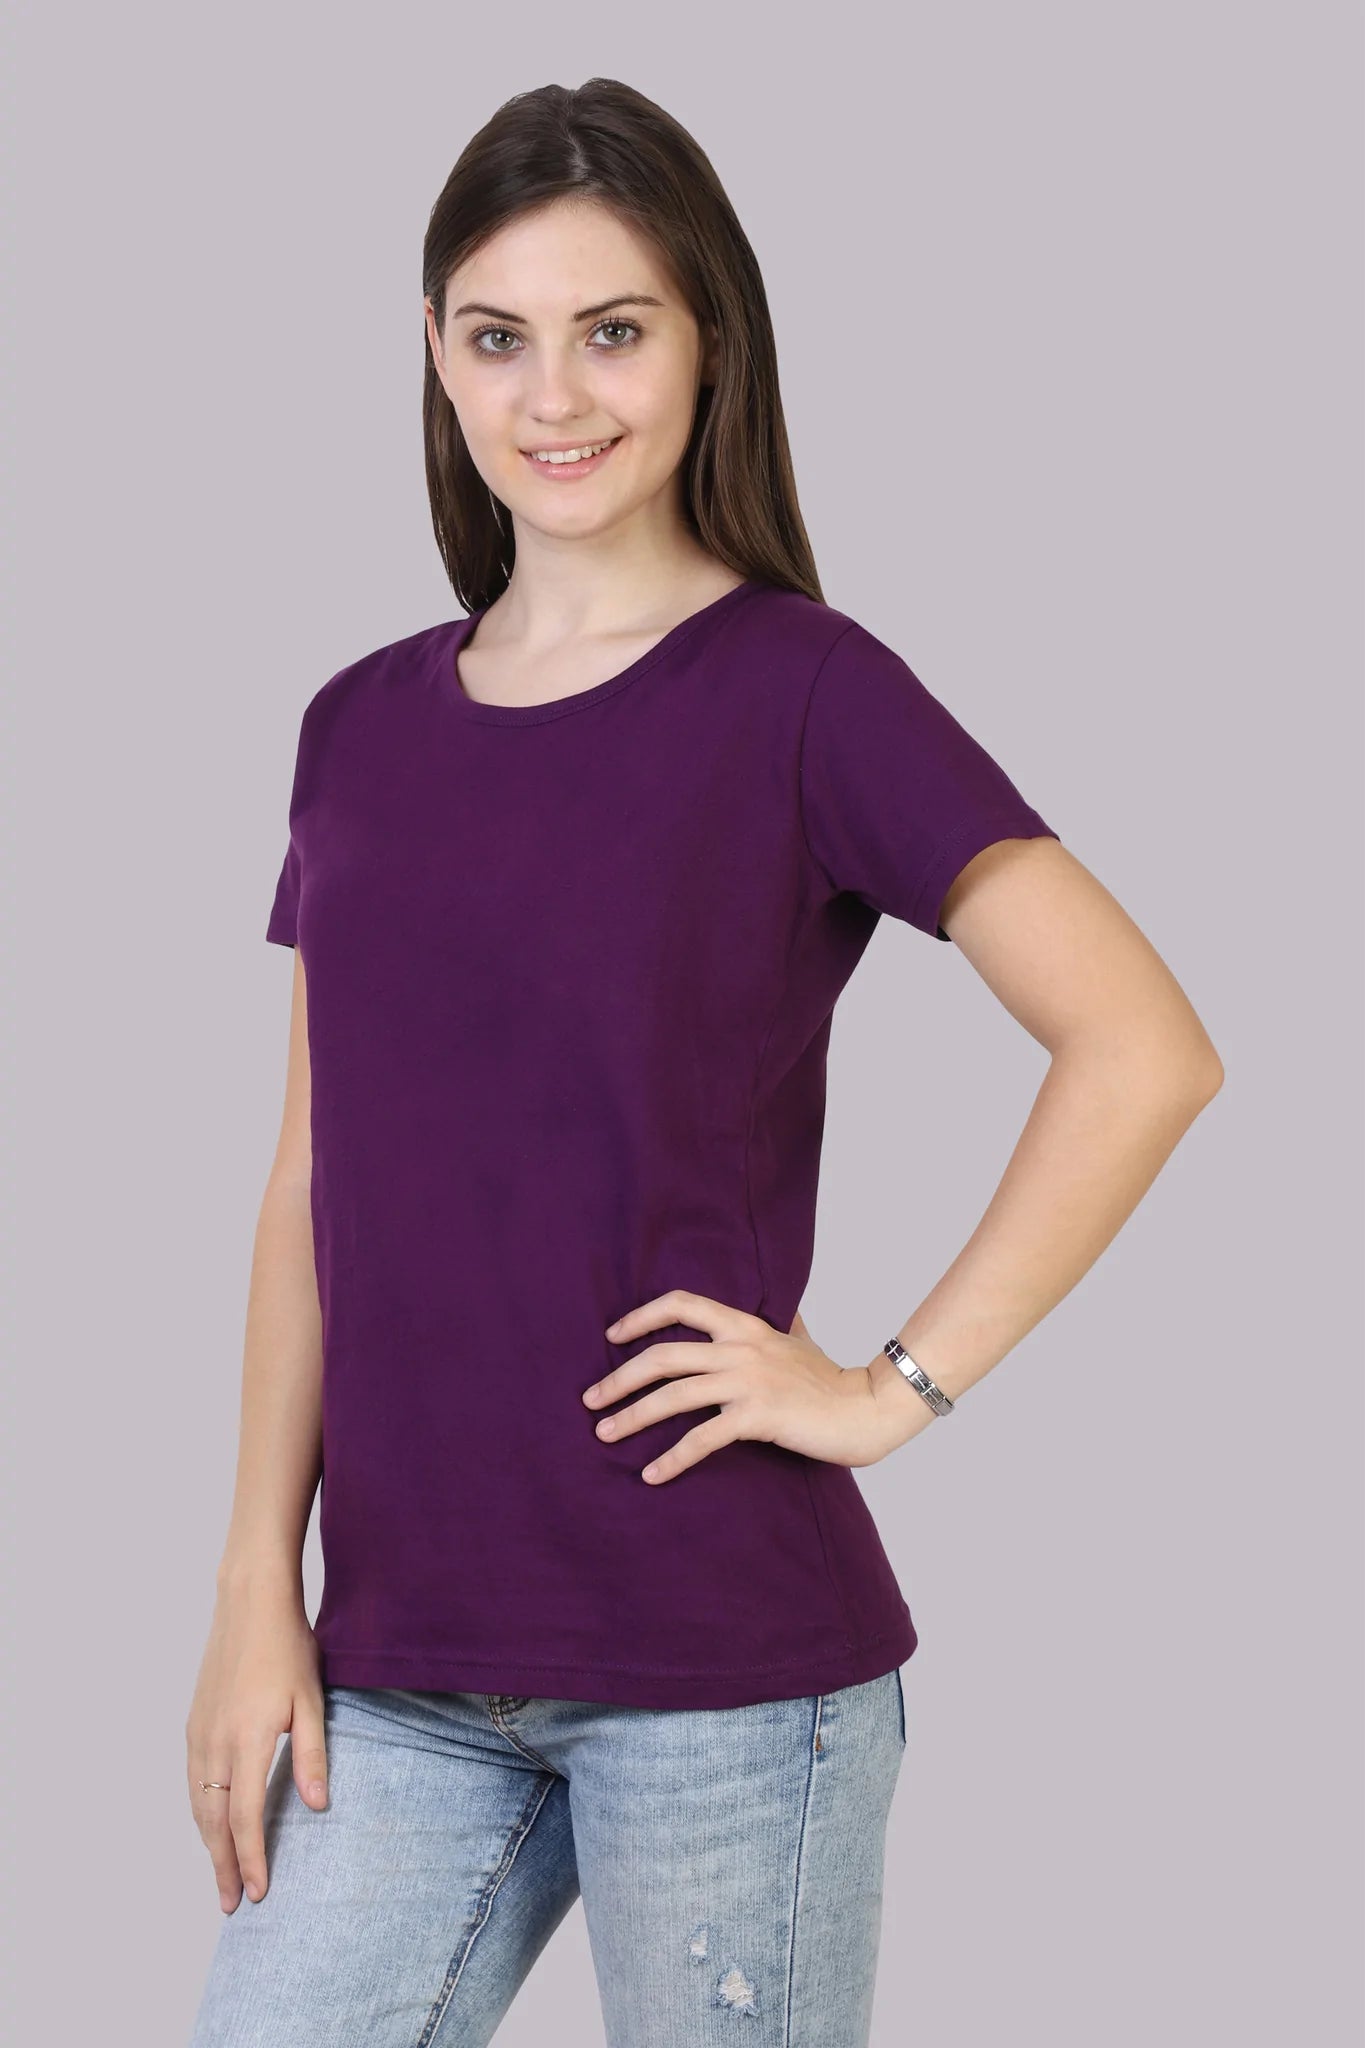 Women's Cotton Plain Round Neck Half Sleeve Purple Color T-Shirt